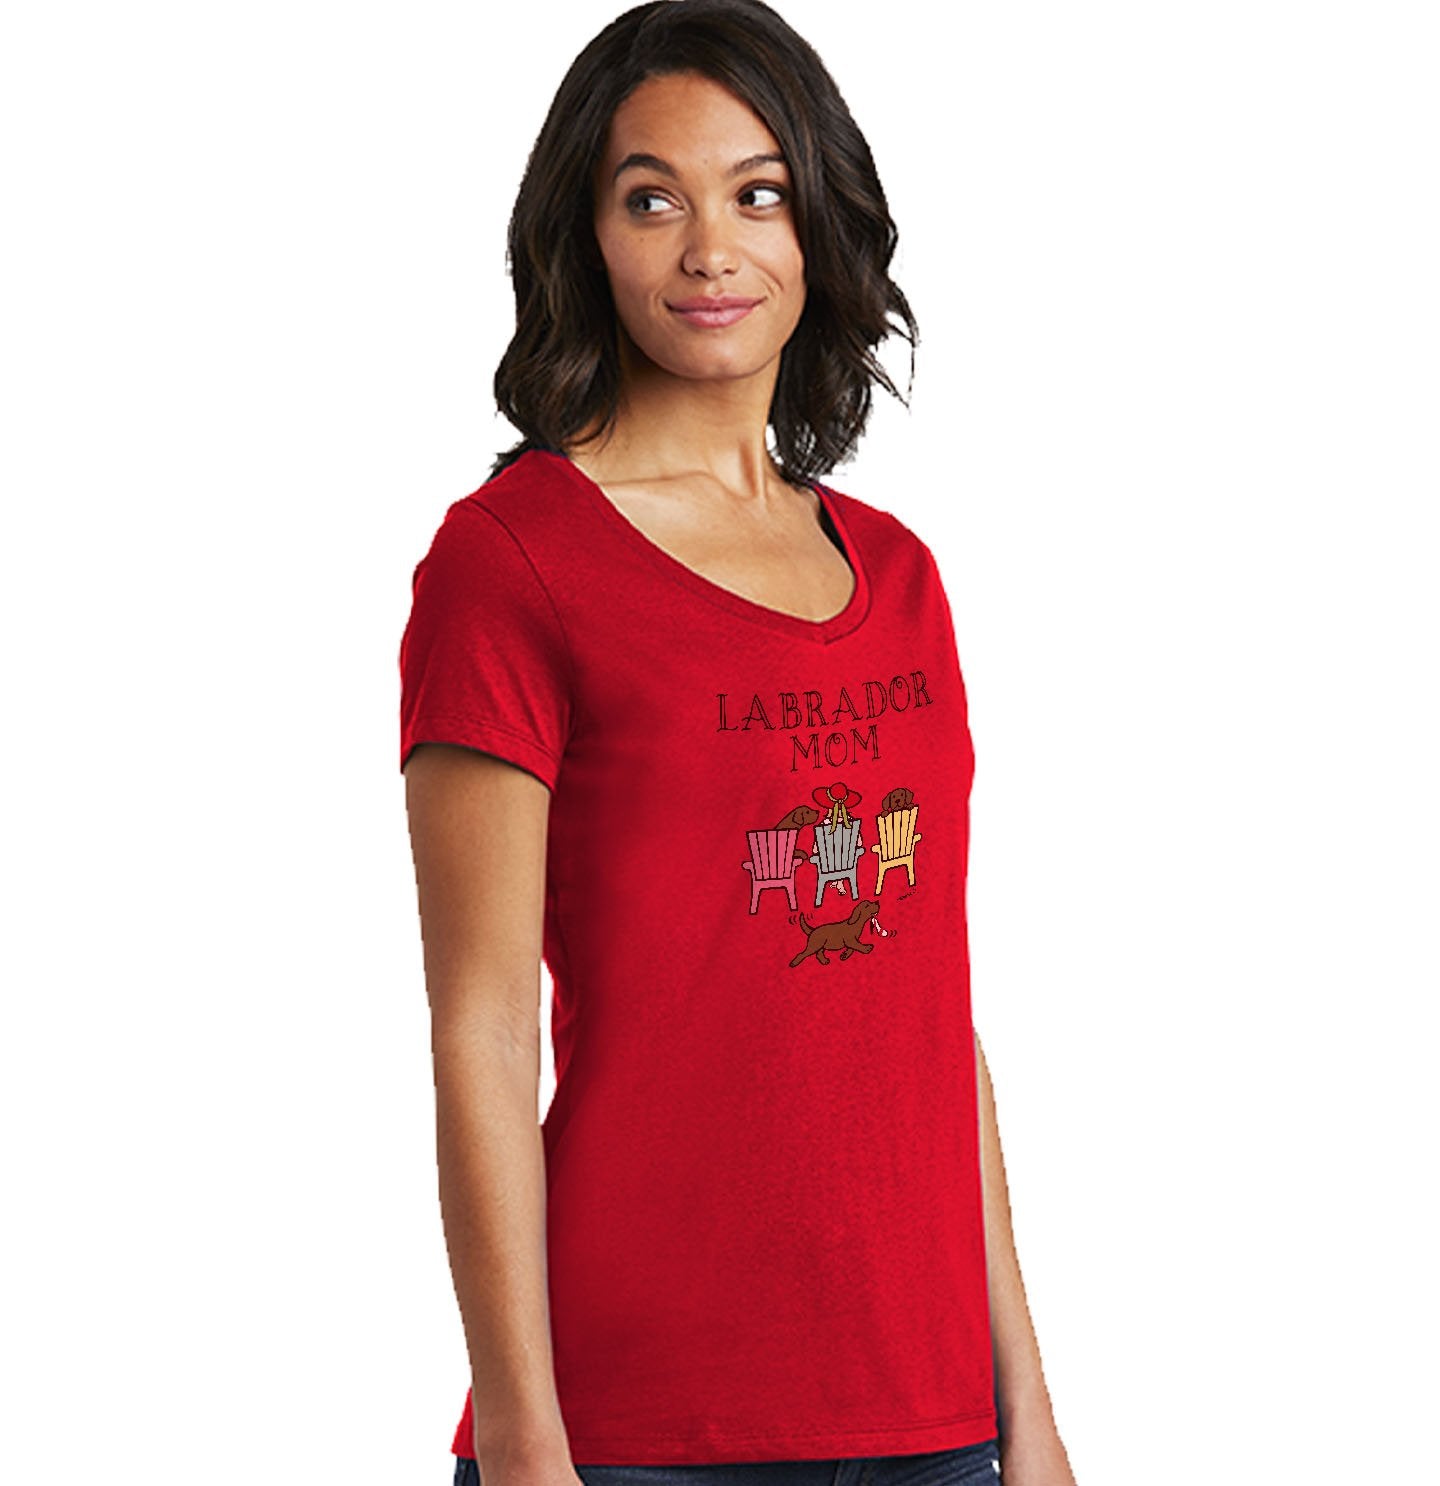 Chocolate Labrador Dog Mom - Deck Chairs Design - Women's V-Neck T-Shirt